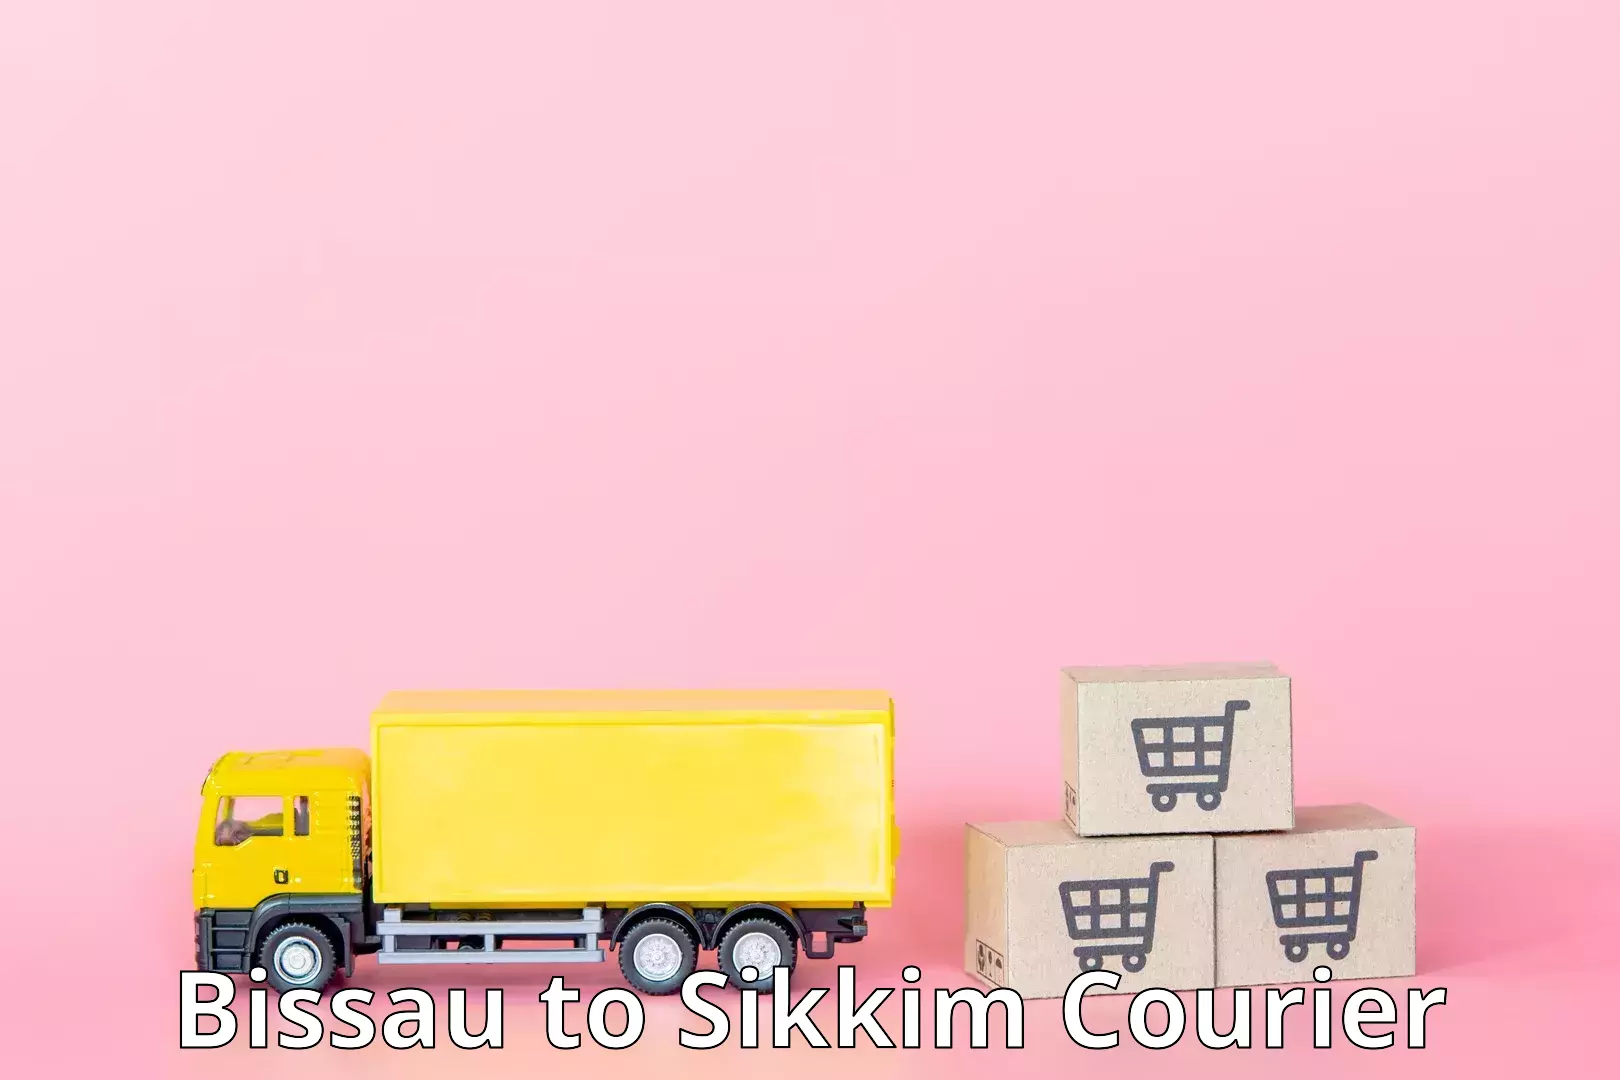 Courier app Bissau to North Sikkim